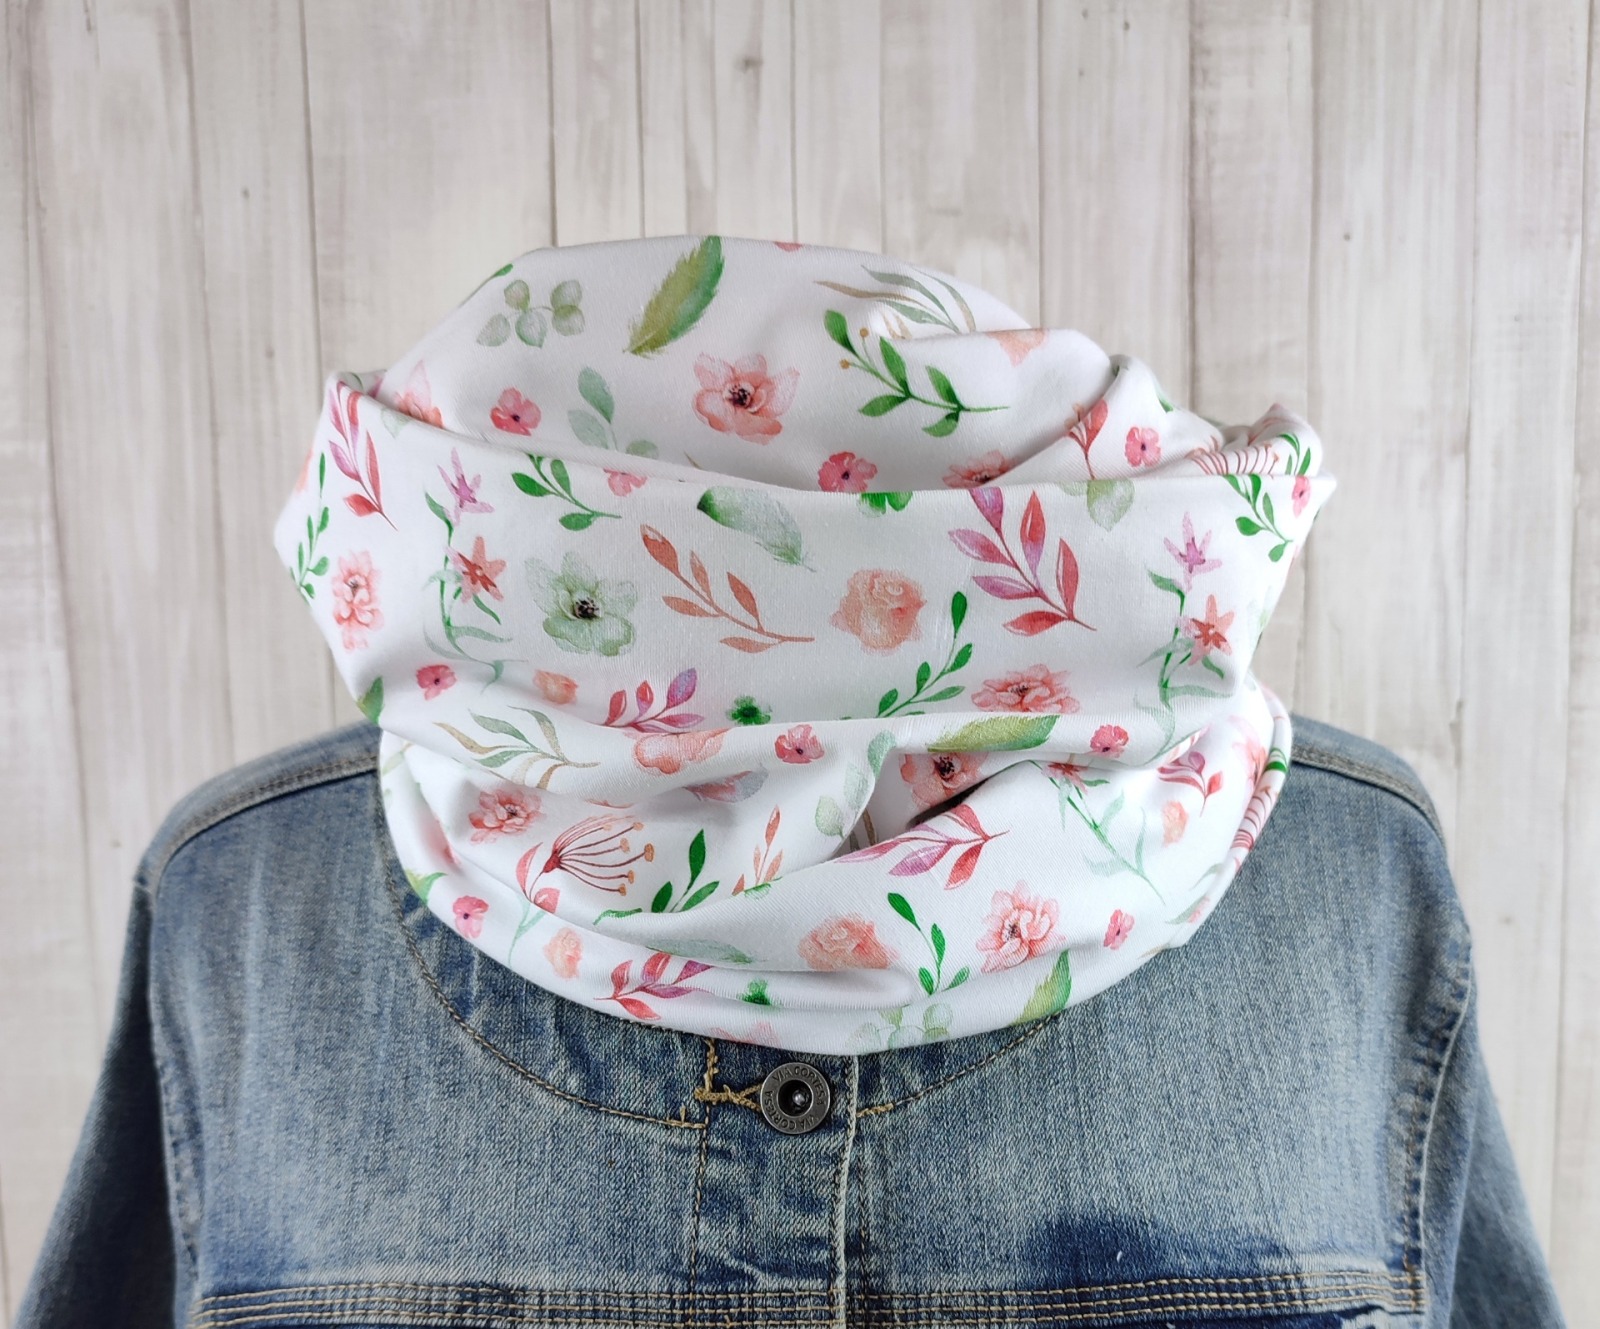 Loop Schlauchschal weiß mit kleinem Blumenmuster in lachsrosa und grün - Schal für Damen aus Jers